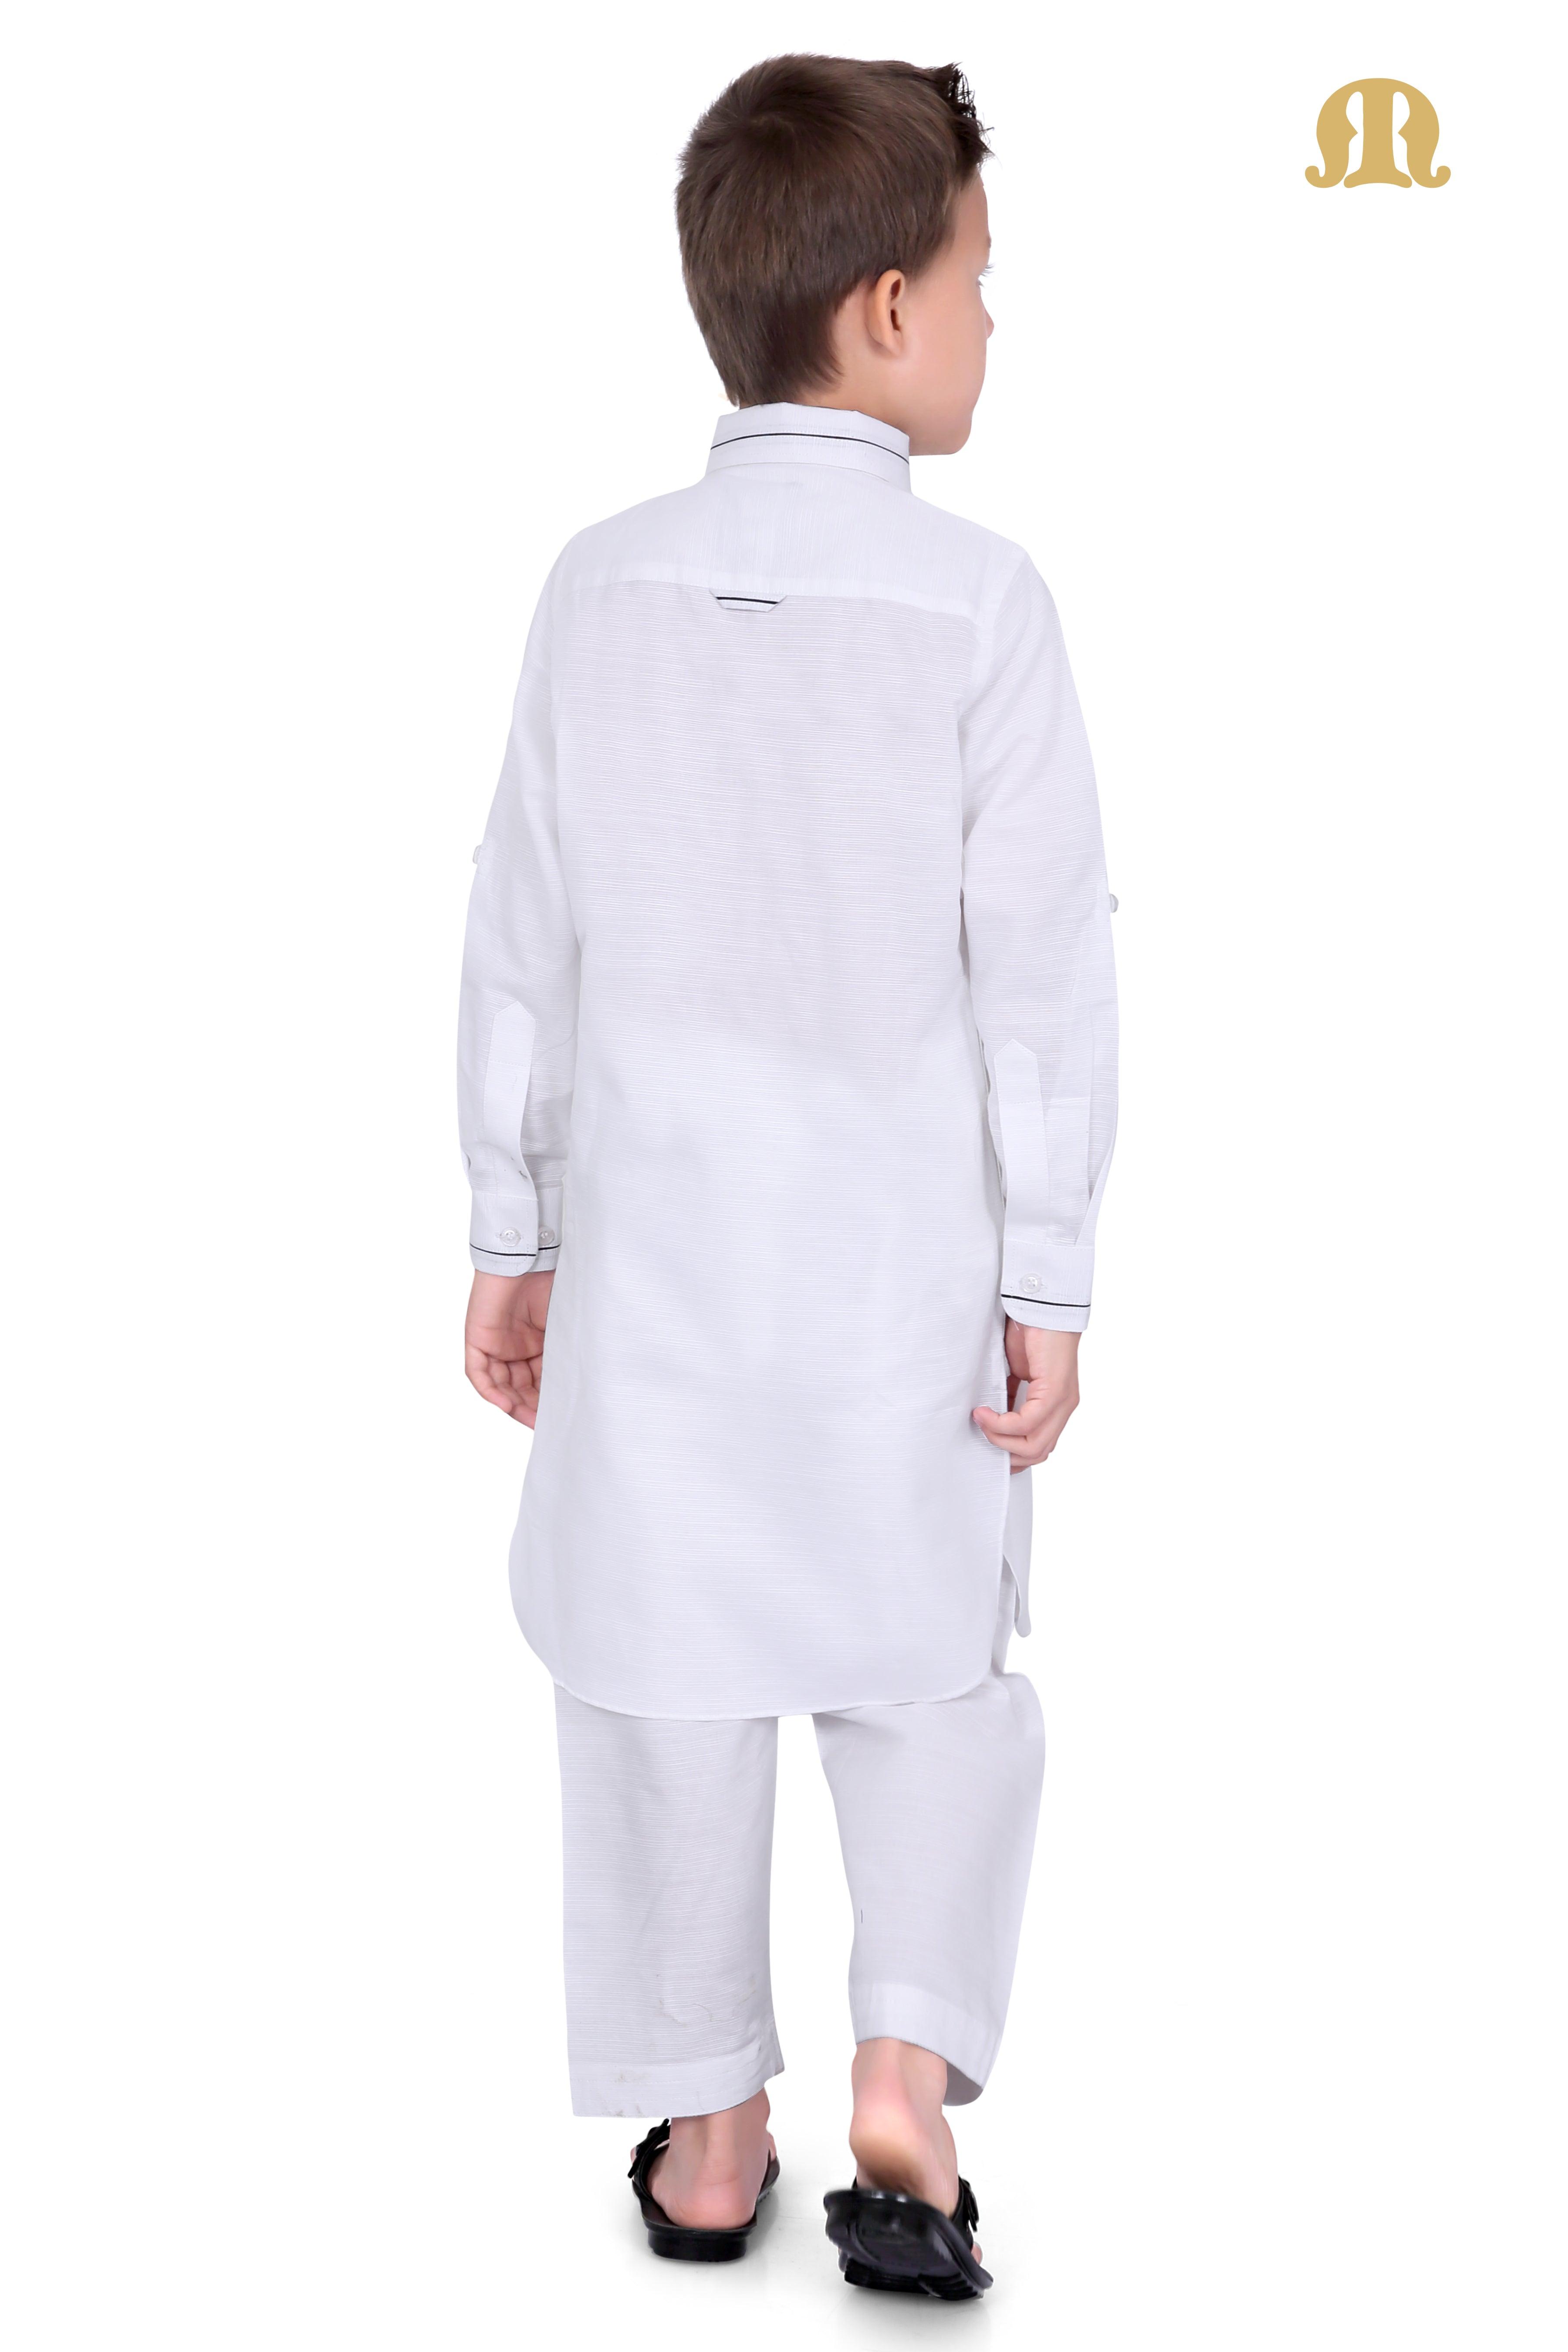 White Riwaya Pathani Suit for Boys